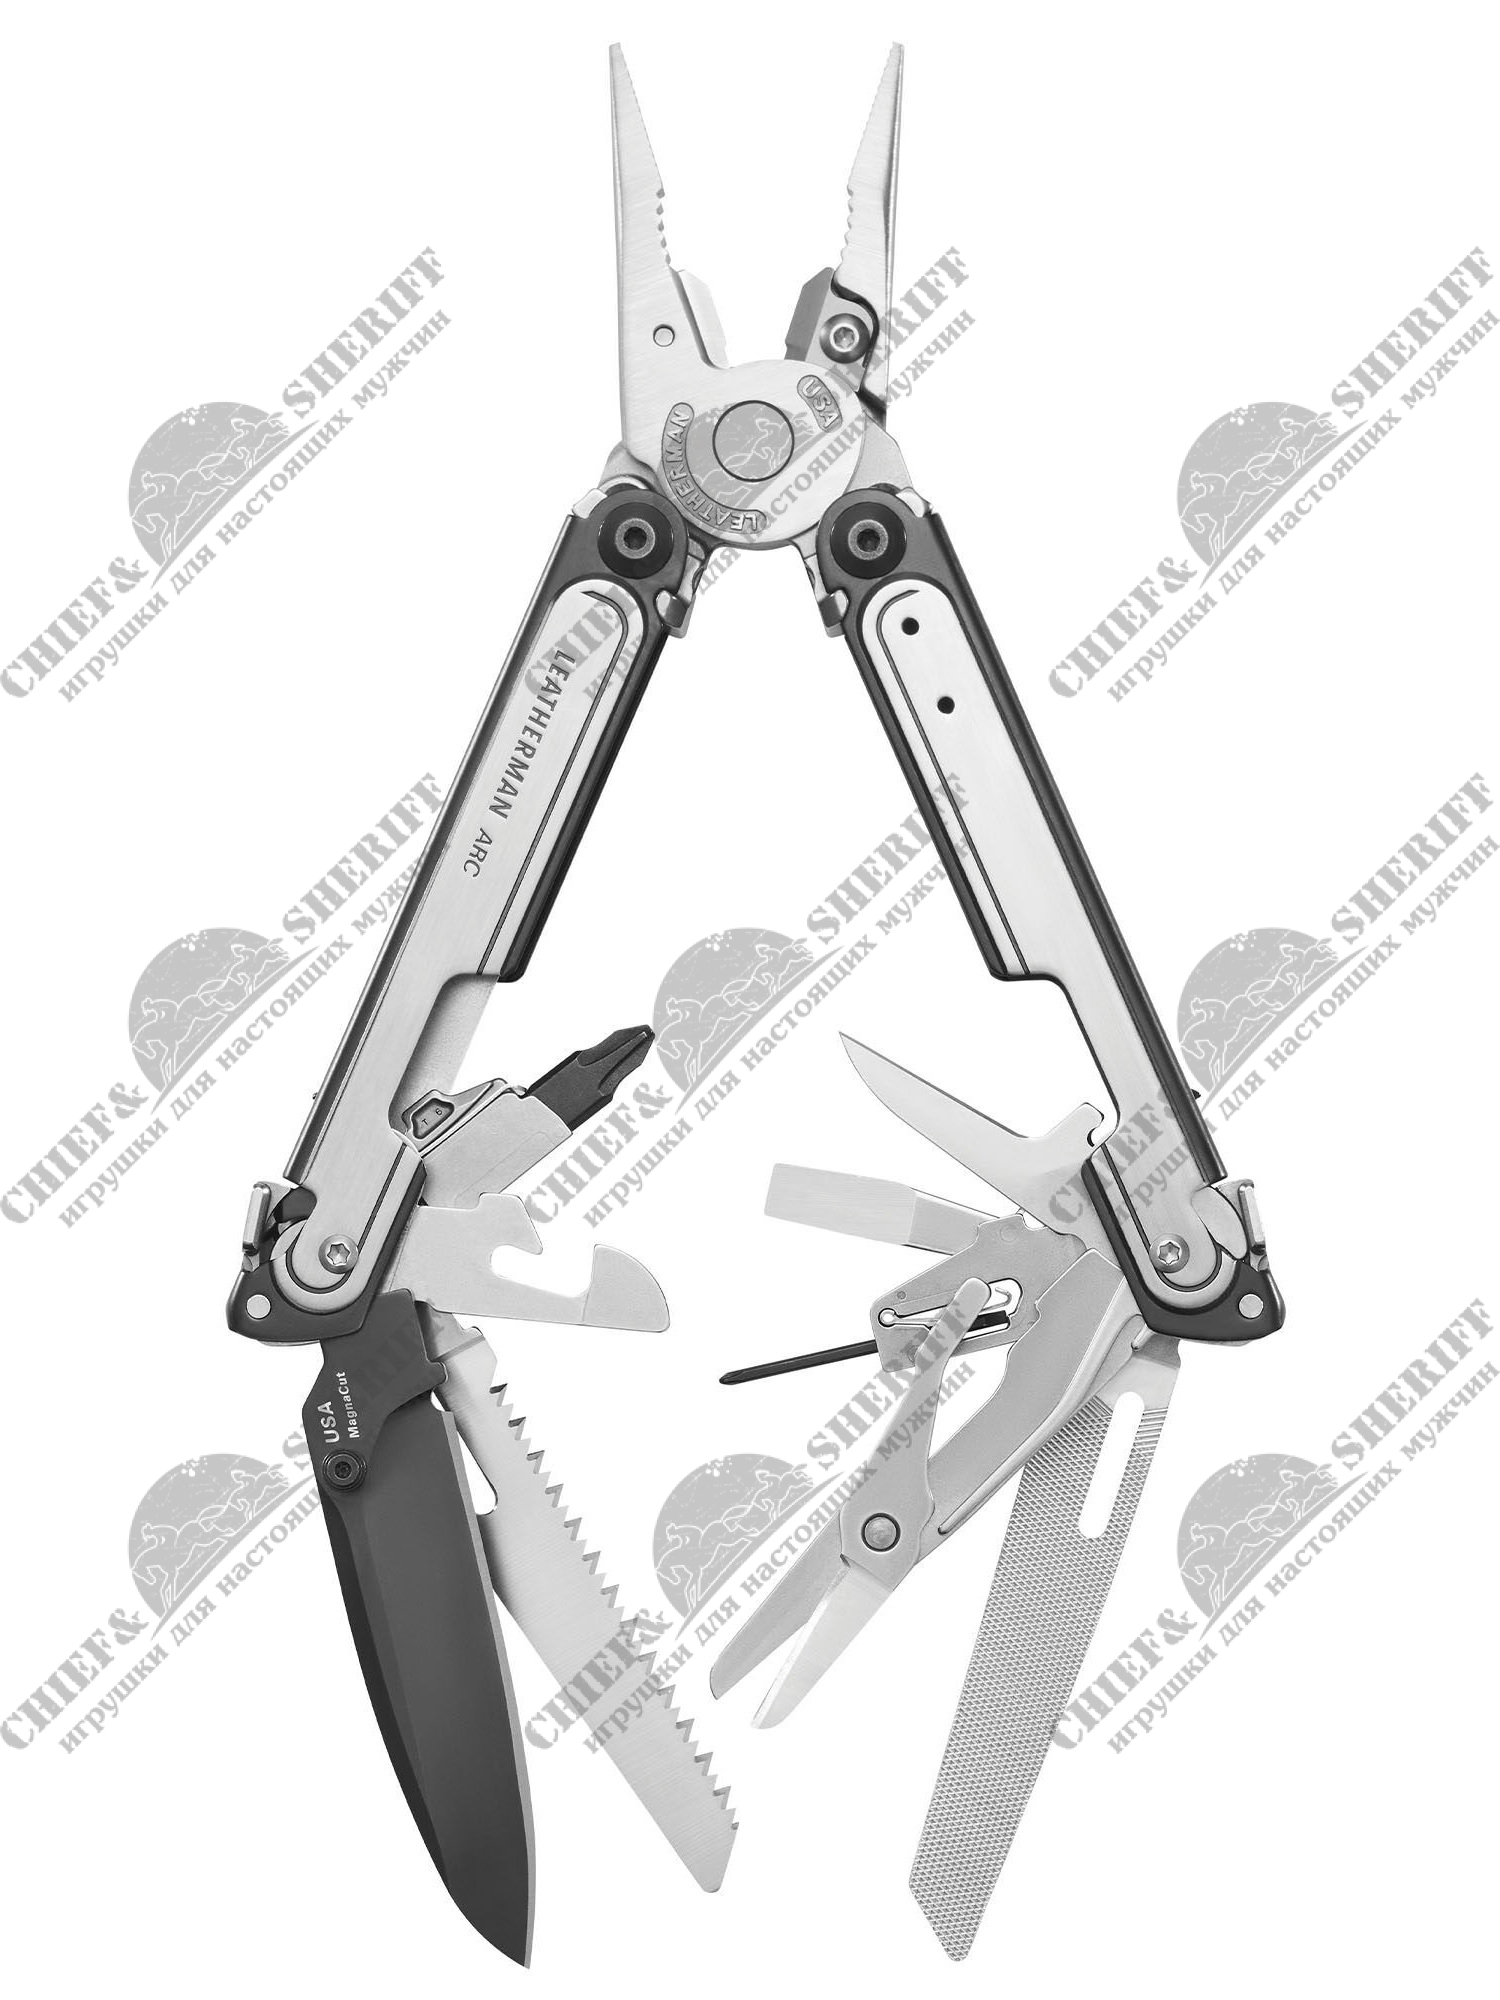 Мультитул Leatherman Arc,100.8 мм, 20 функций, Black DLC & Stainless Steel, нейлоновый чехол, 833076